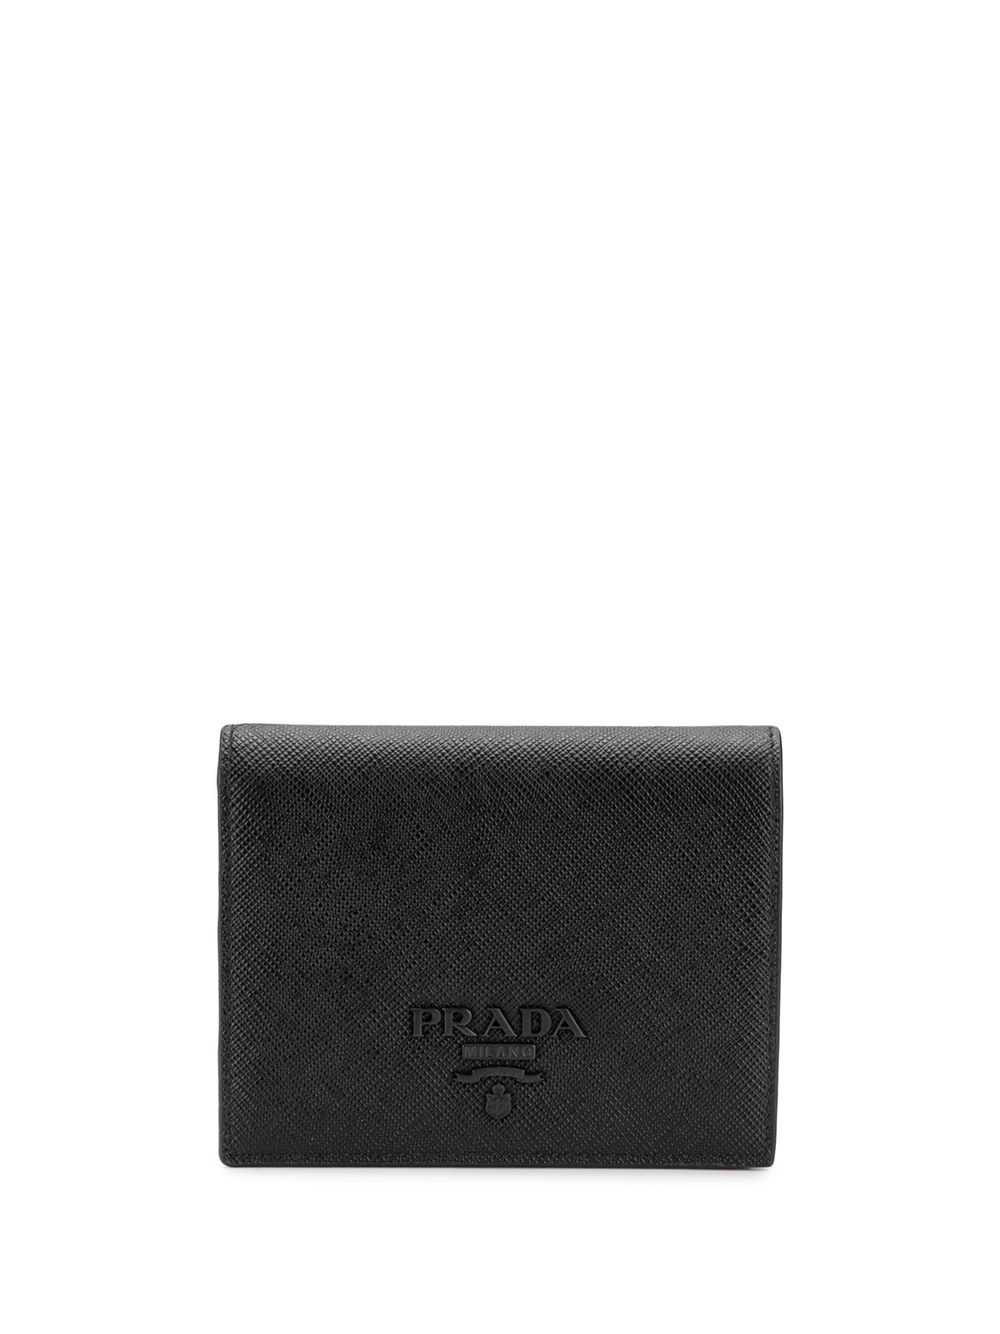 фото Prada компактный кошелек с металлическим логотипом